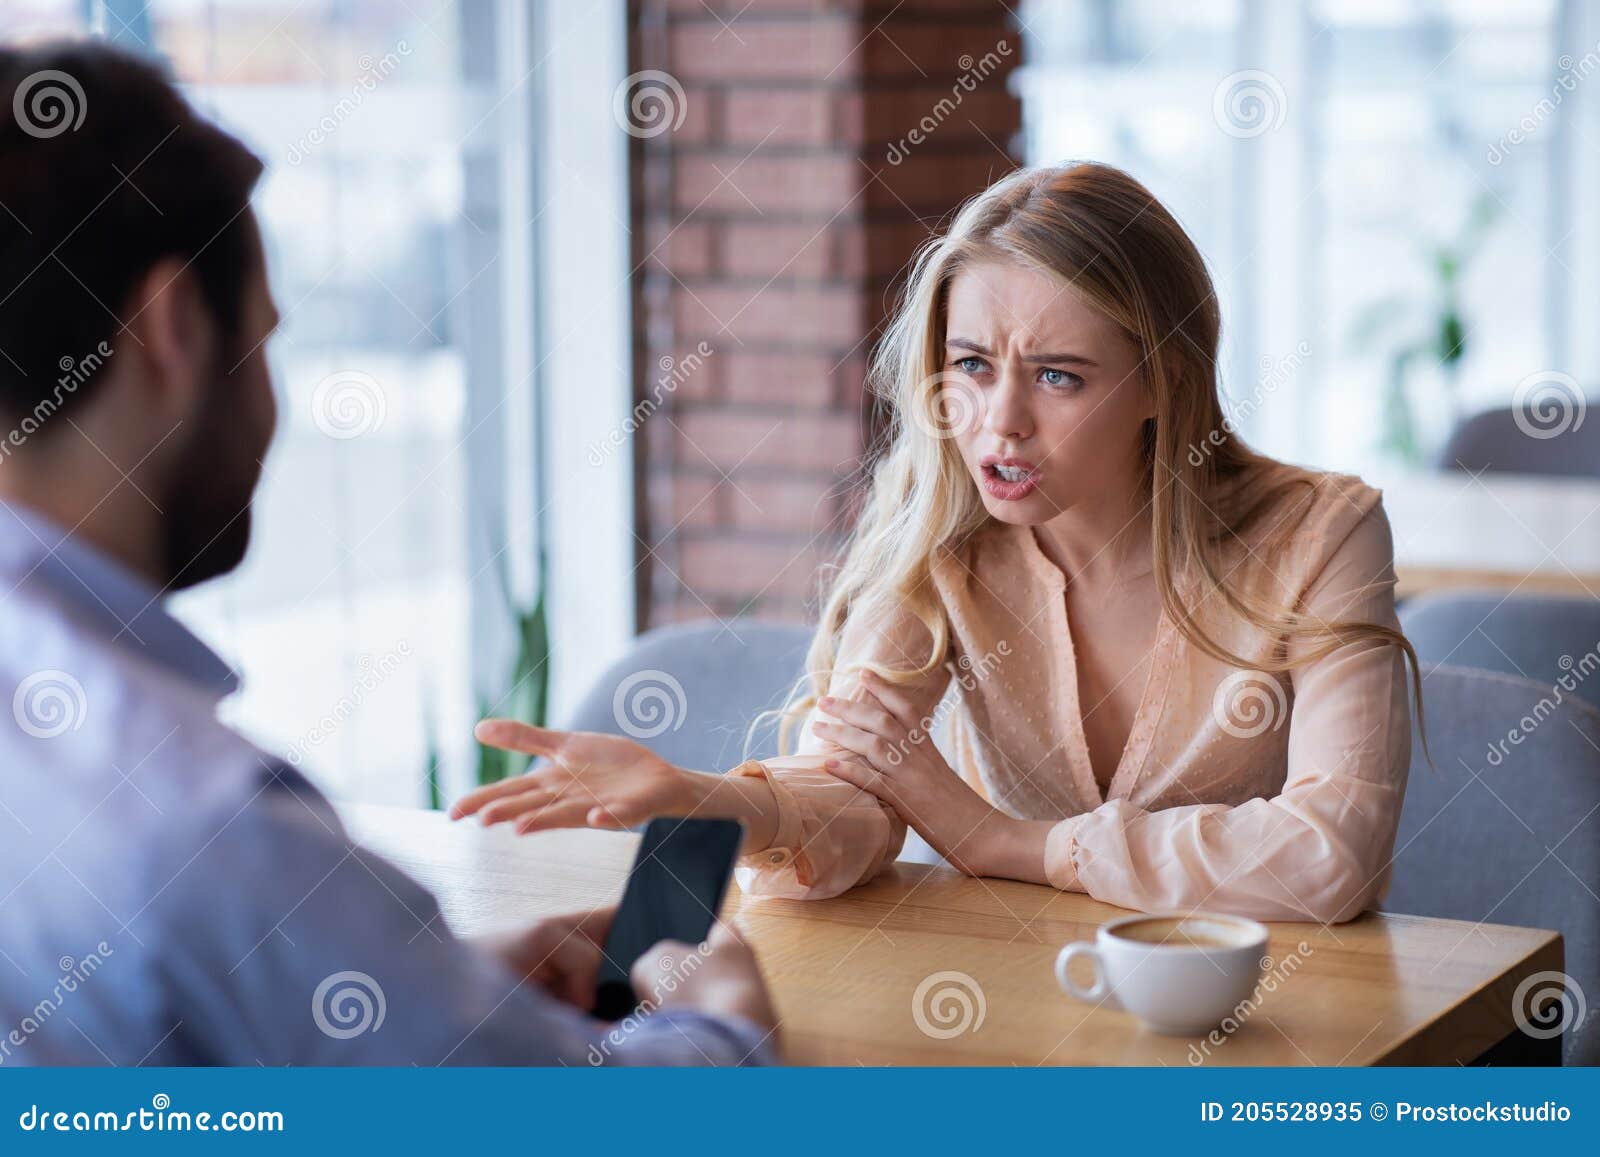 Сердитая молодая женщина спорит с бойфрендом застряла в смартфонах иотсутствия заботы о несчастном сообщения Стоковое Изображение - изображениенасчитывающей анимизма, интернет: 205528935